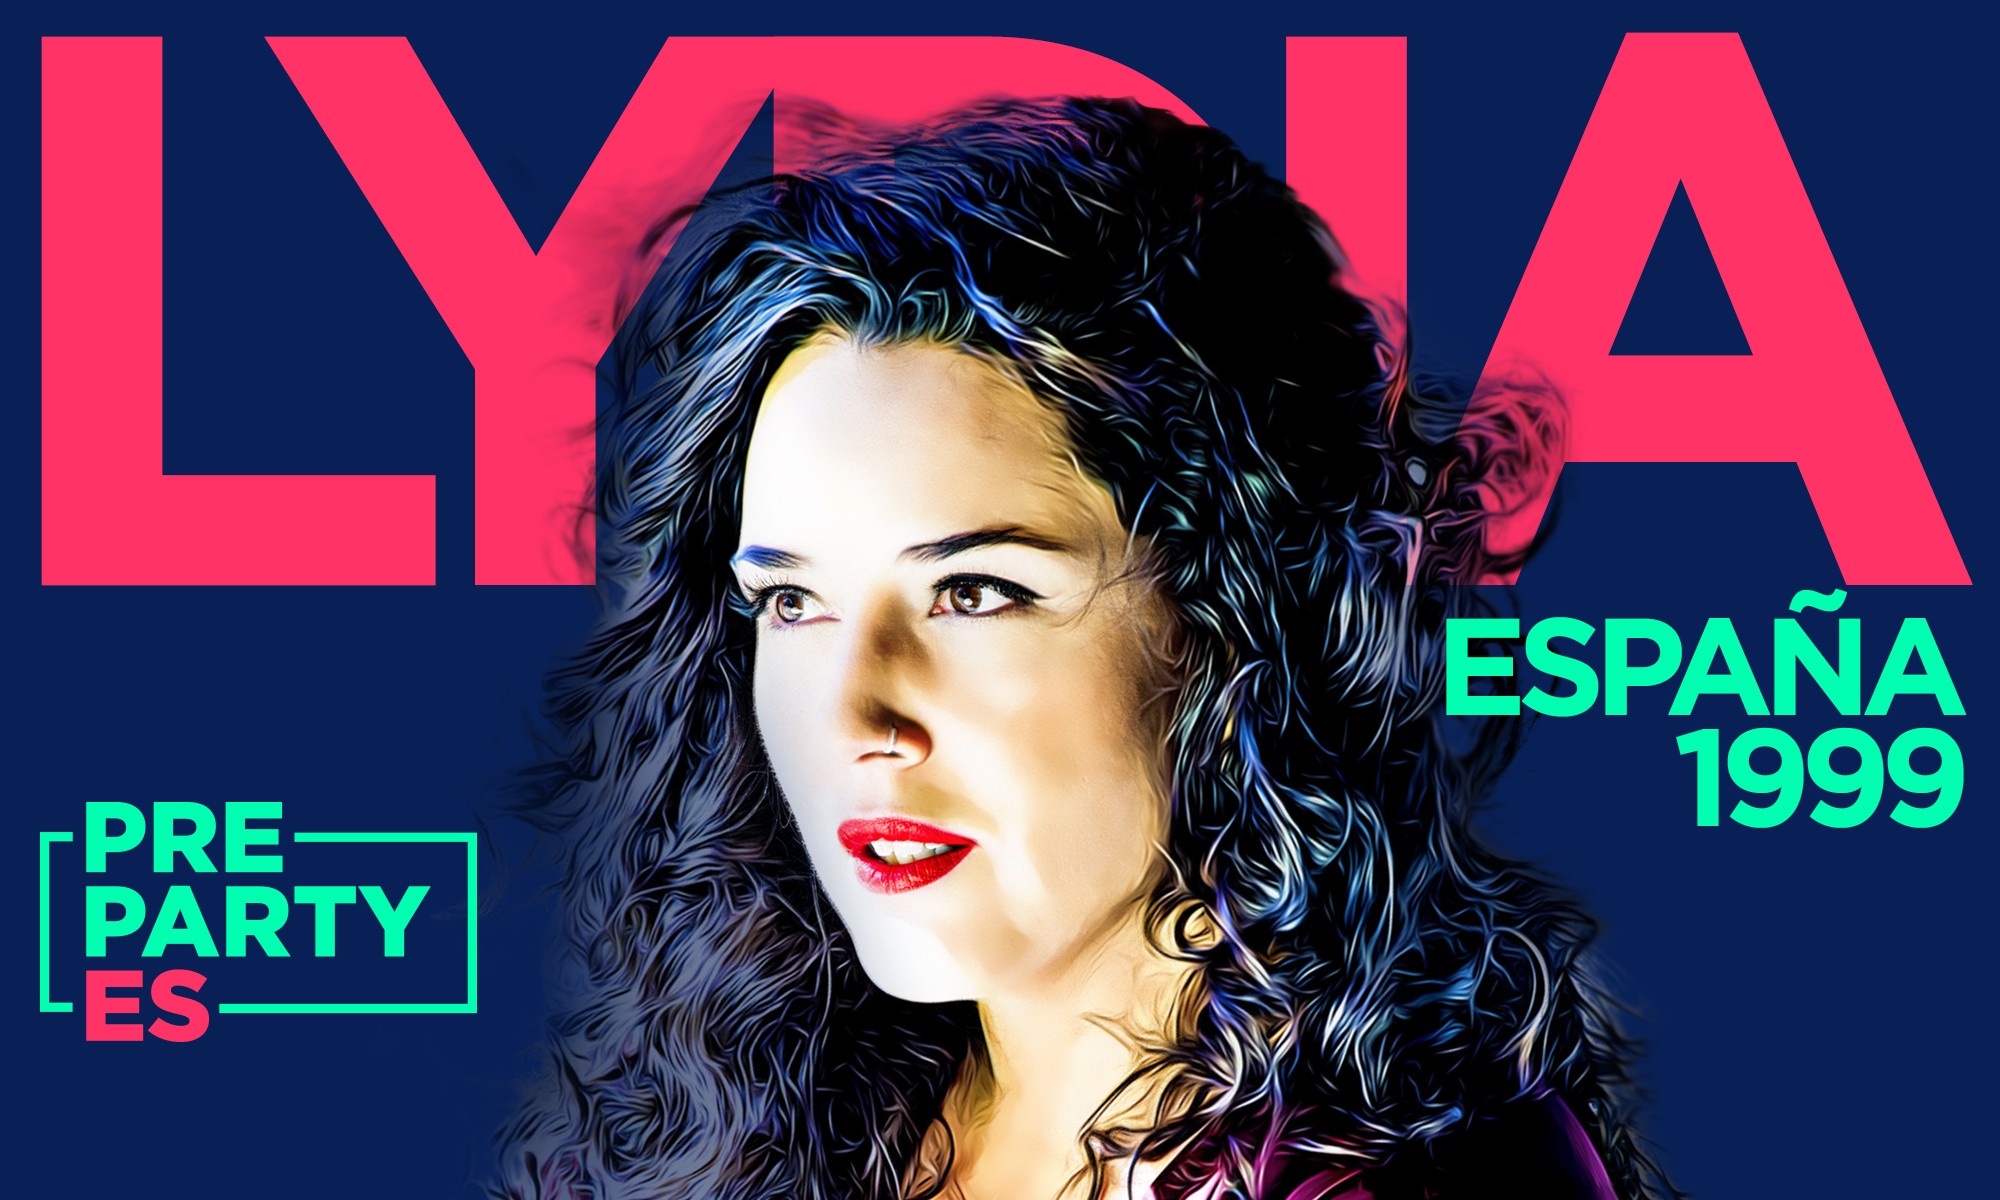 ¡Lydia actuará en la #PrePartyES en el vigésimo aniversario de Jerusalén 1999!